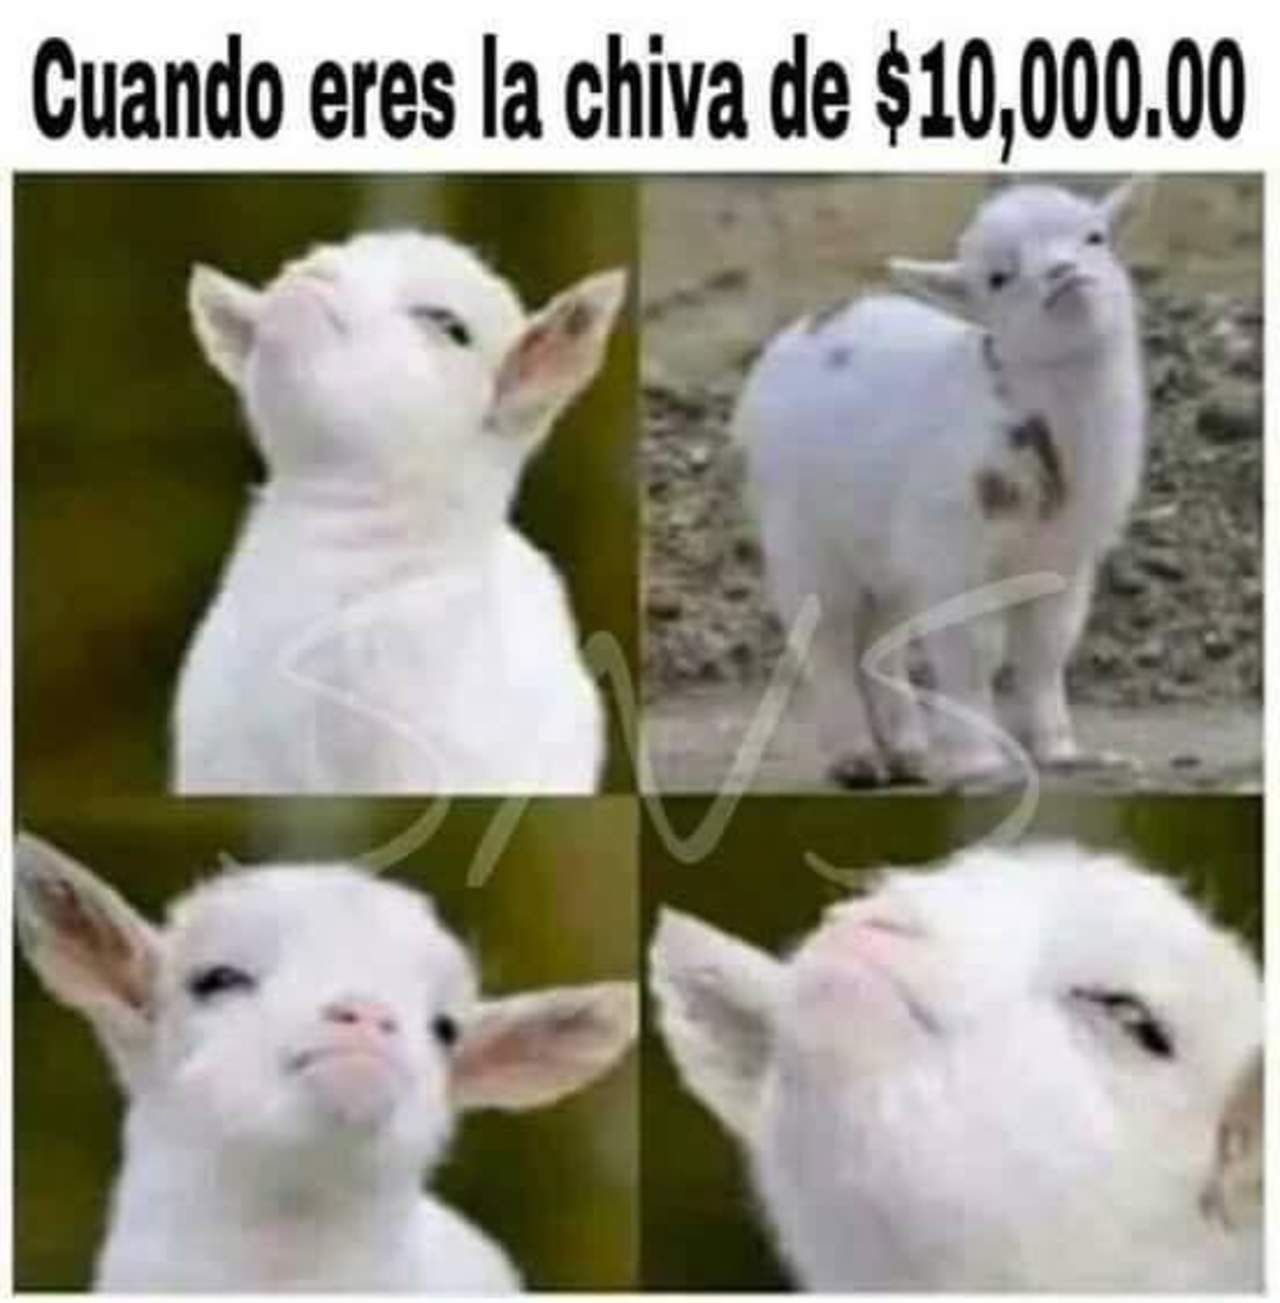 La 'Chiva' de 10 mil pesos no es un animal como los tuiteros lo han mostrado en diversos memes. (ESPECIAL)